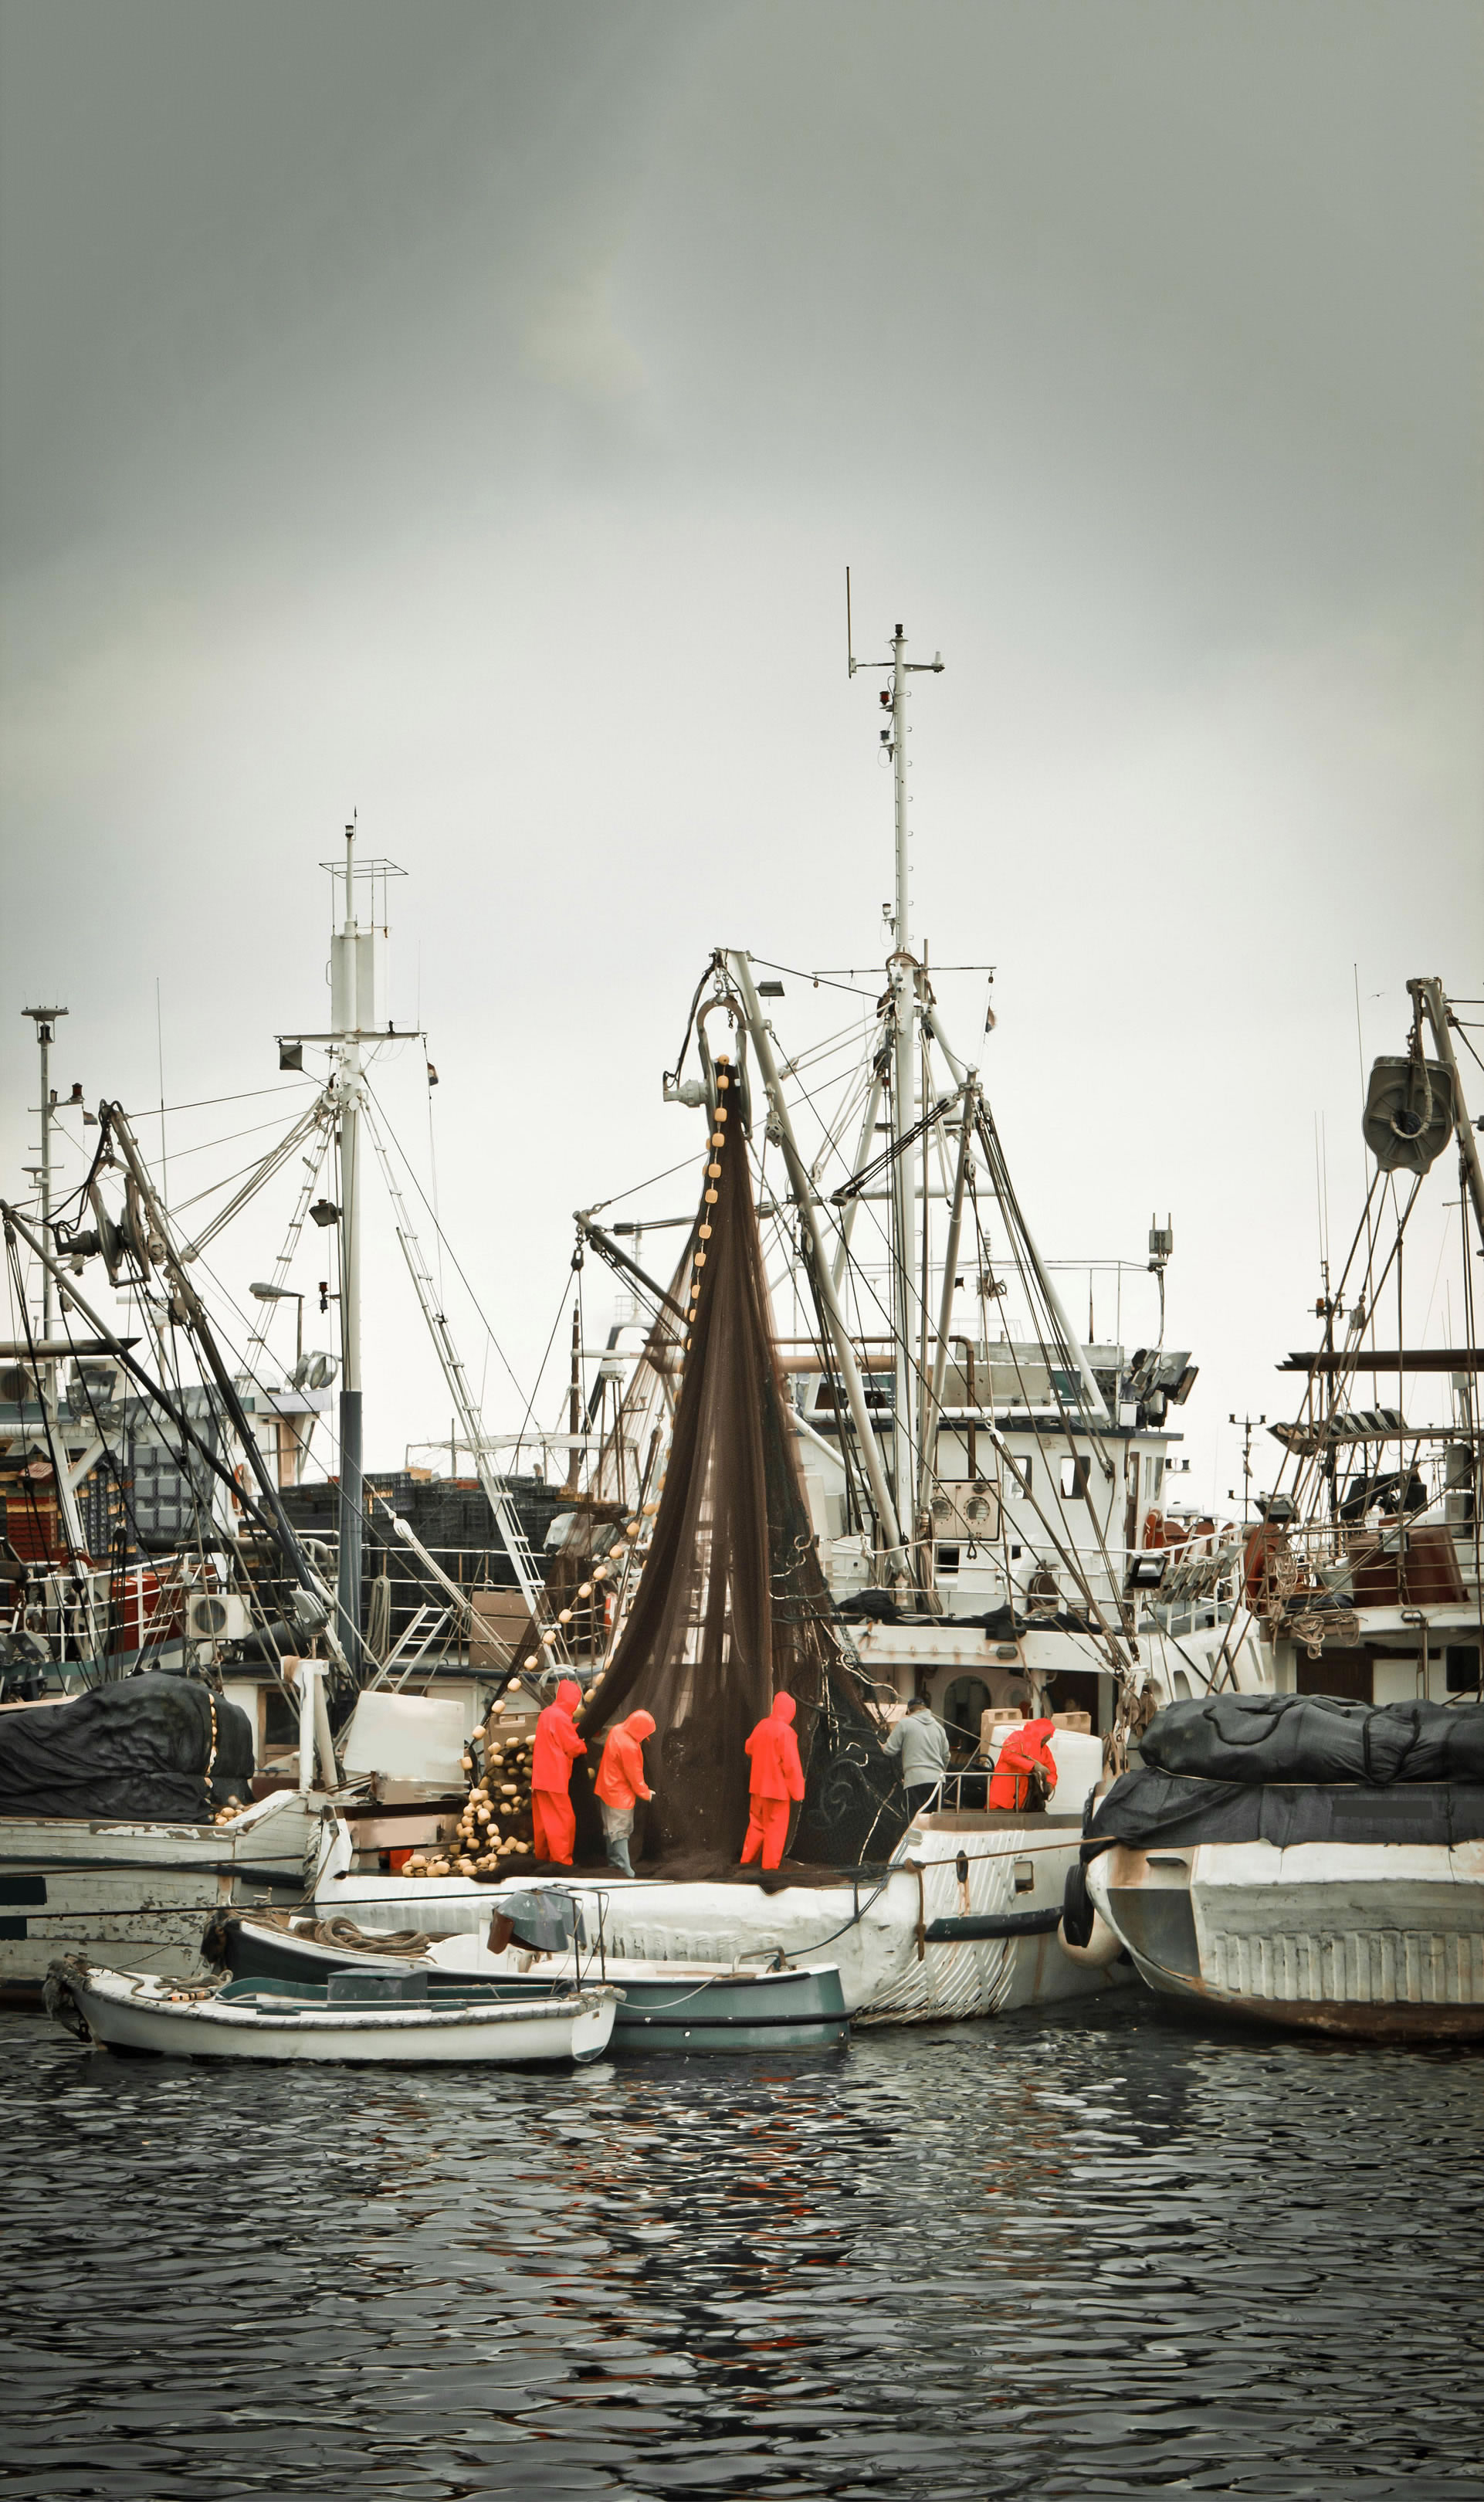 Rybacy w ubraniu ochronnym sprawdzają sieci na trawlerze w porcie rybackim, dookoła inne łodzie.